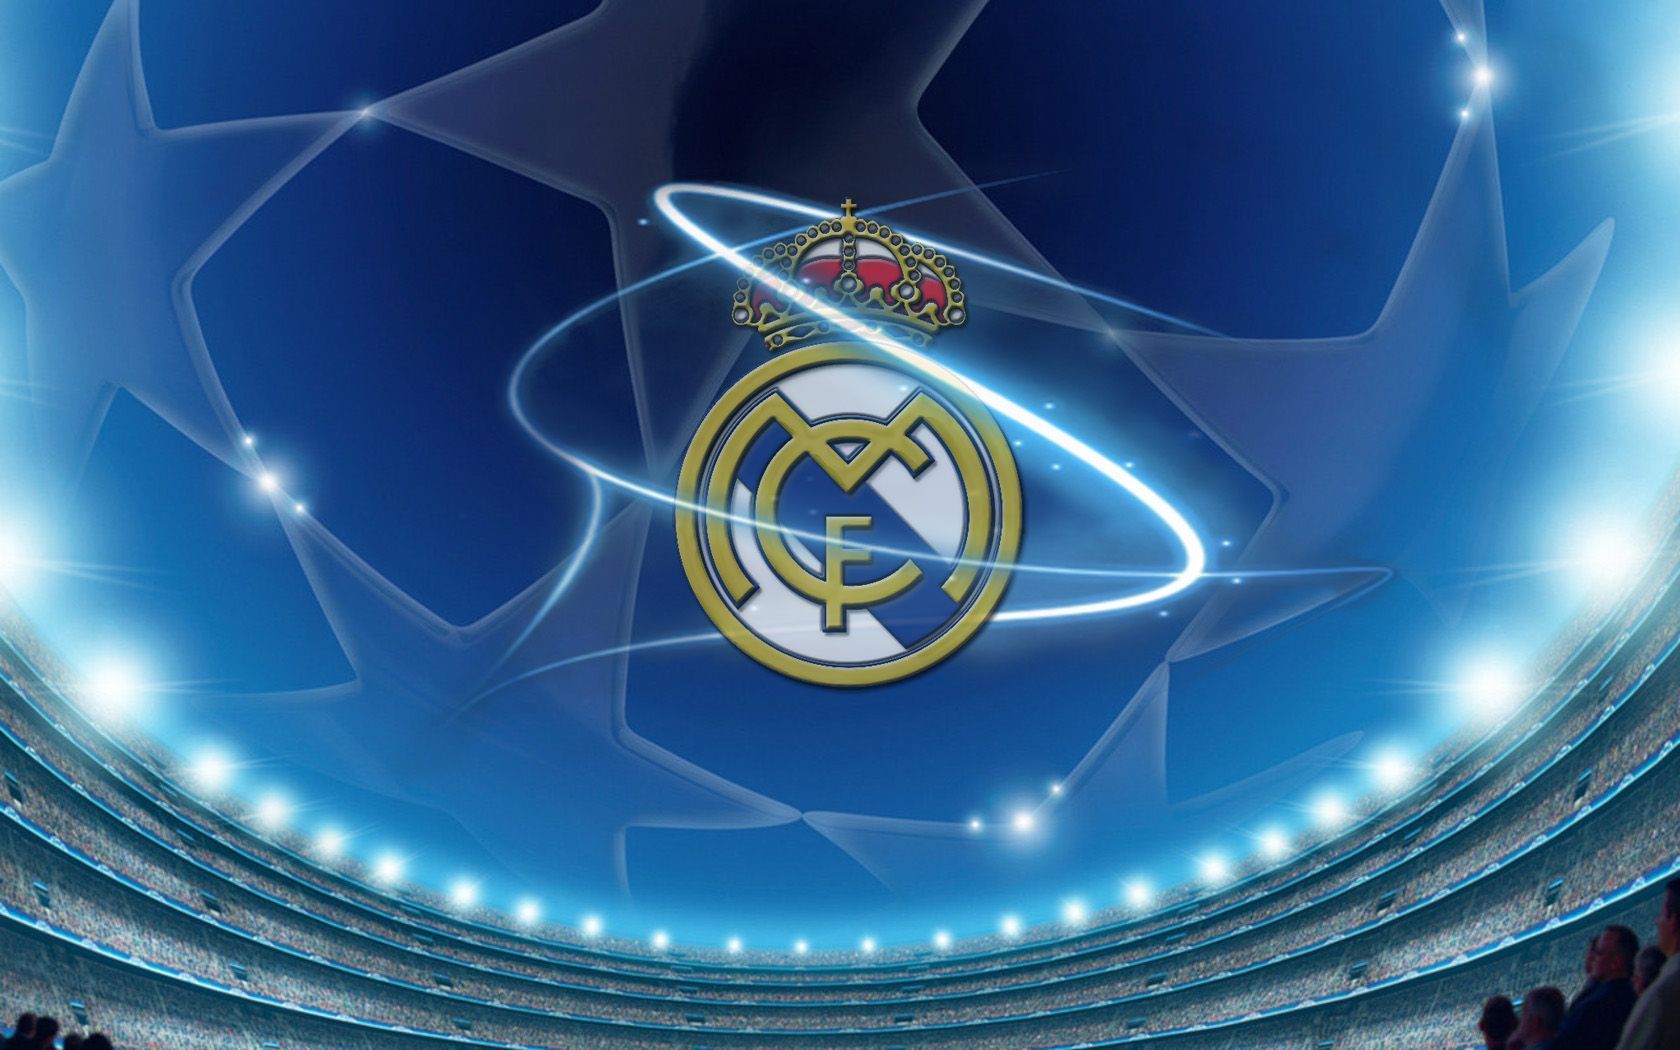 Real Madrid Wallpaper | 1680x1050 | ID:25795